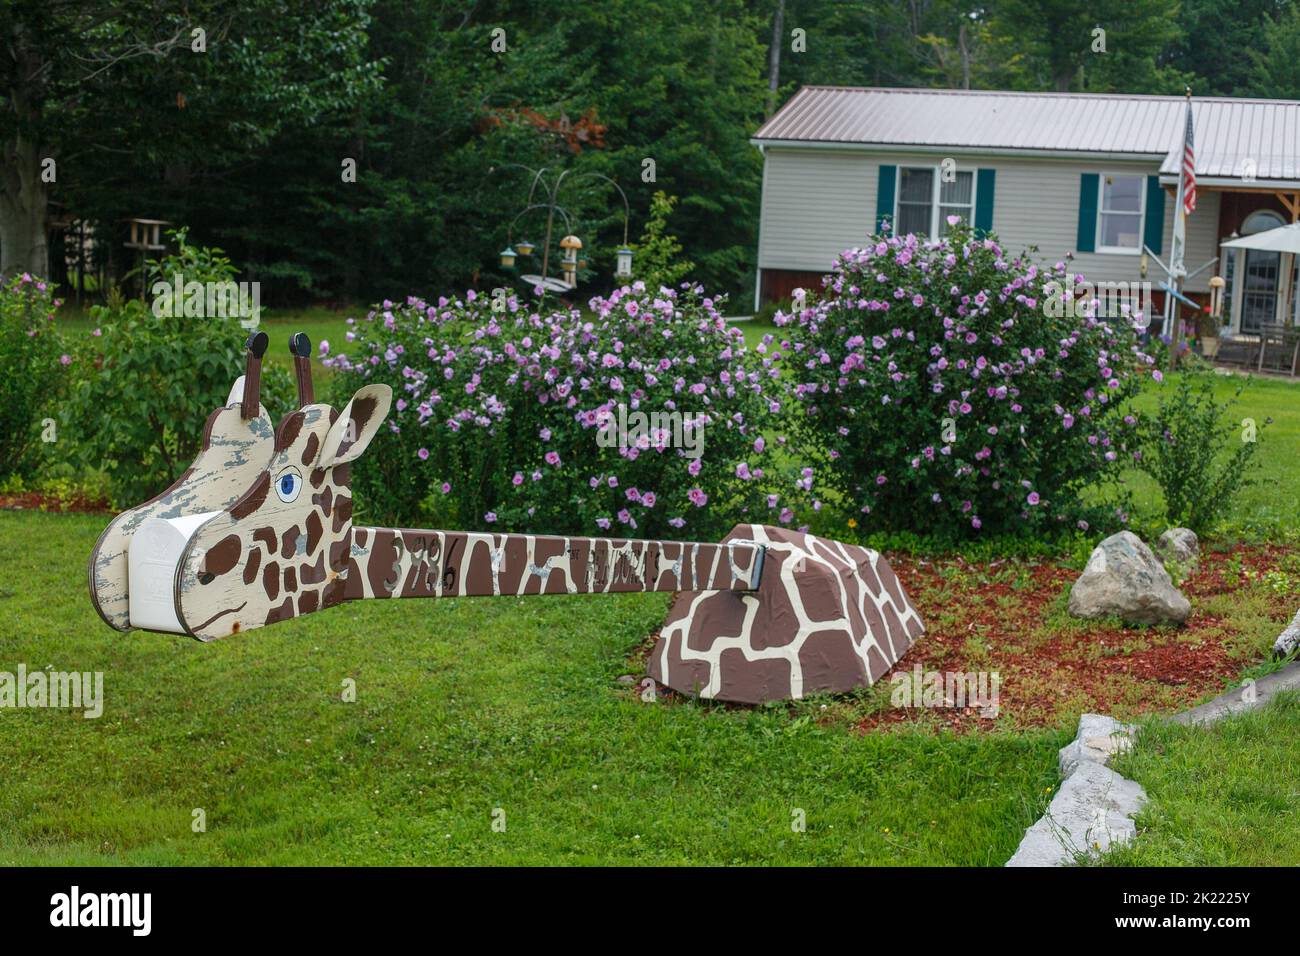 A folk art mailbox in the shape of a giraffe, near Oneida Lake, central New York State, USA. Stock Photo